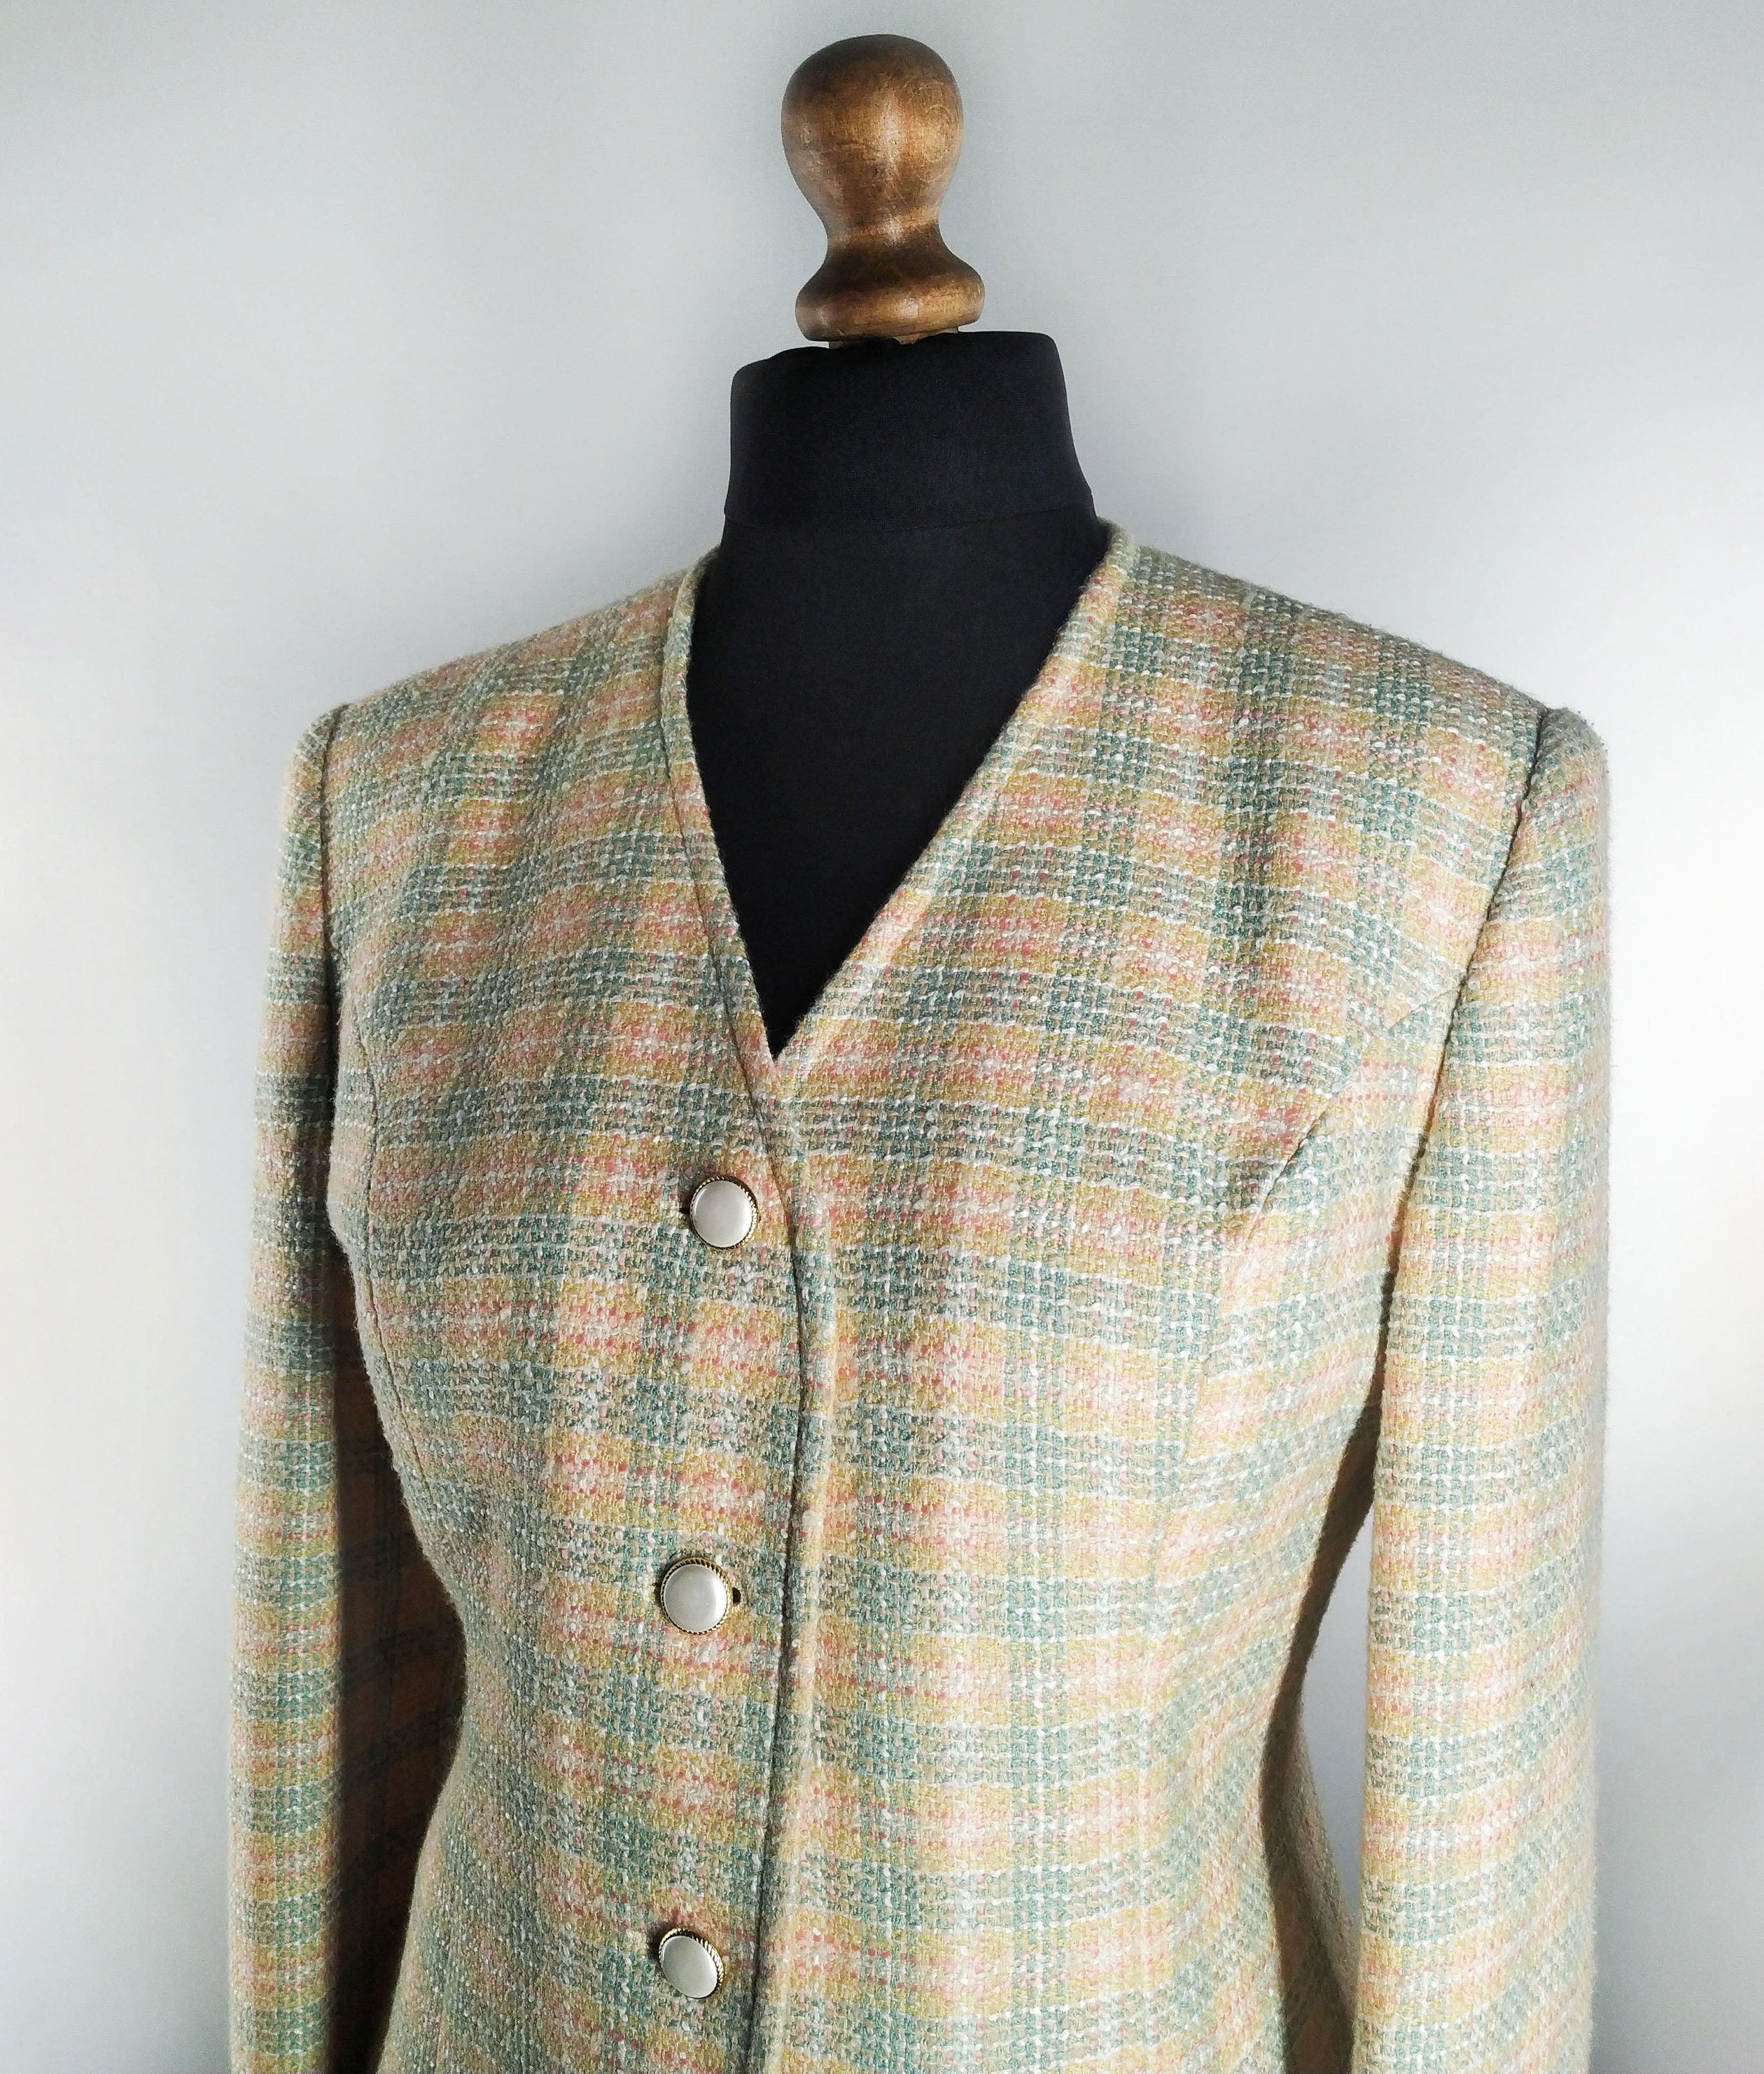 Vintage Tweed Blazer in Pastel Colors and Plaid Pattern - Etsy